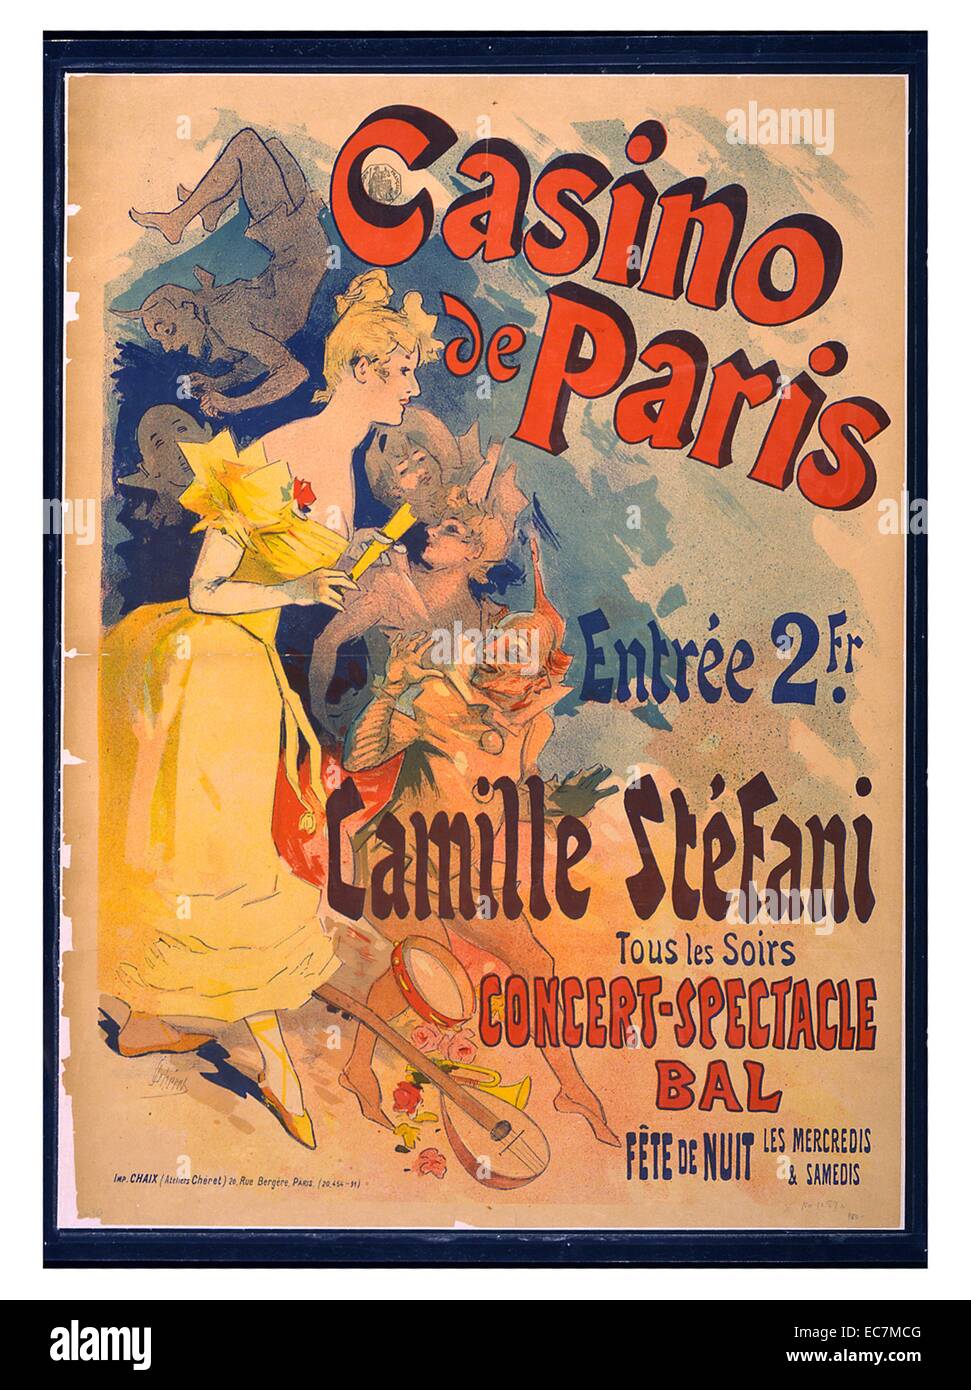 Casino De Paris France Line Renaud Vintage Travel Advertisement Poster Print 